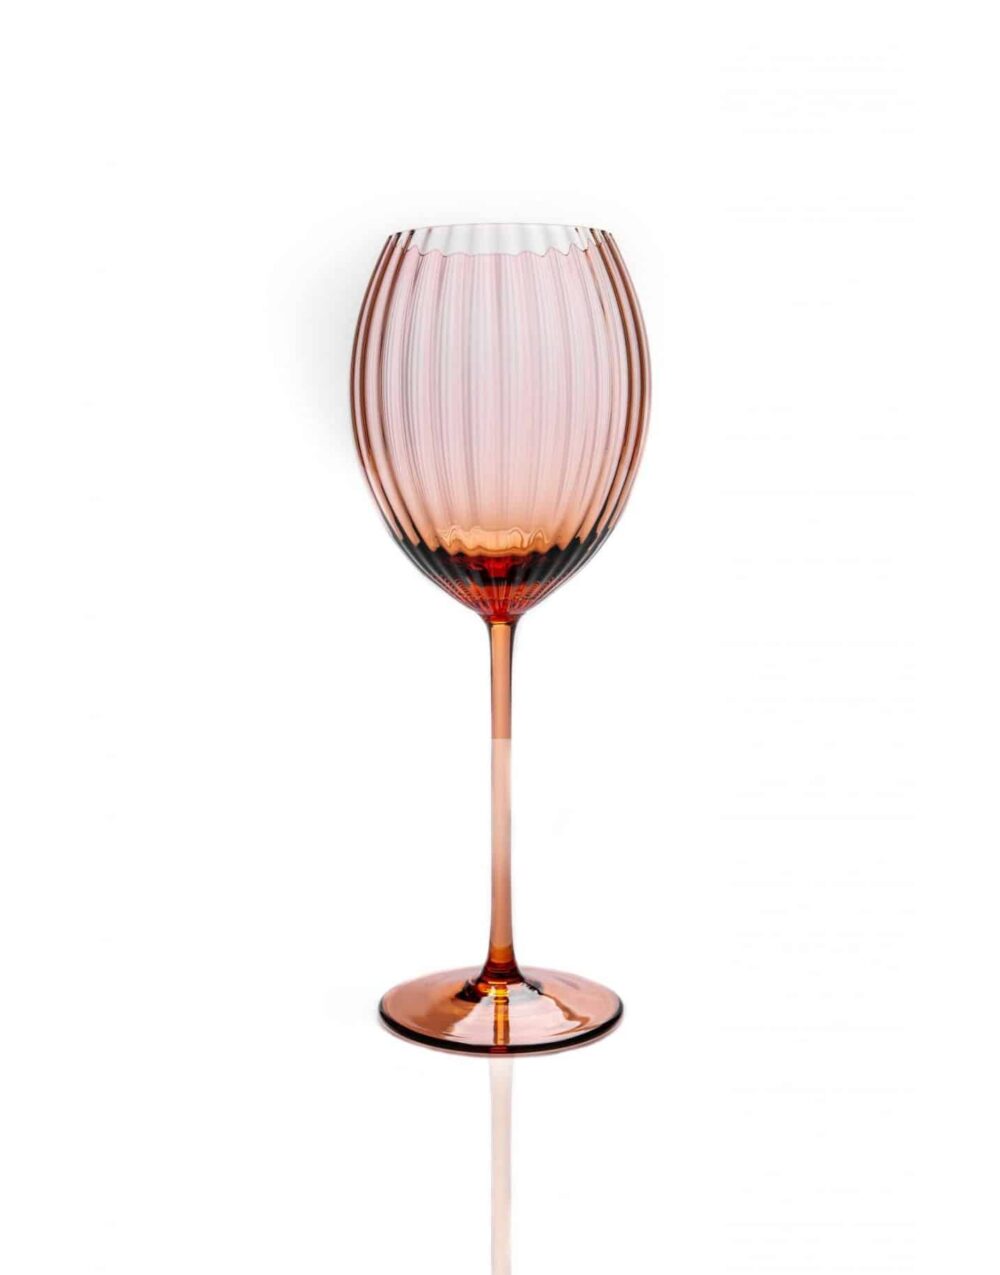 lyon ovalt vinglas, bronze brunt vinglas, bordækning, mundblæst glas, handblown wineglass, bordækning, glas